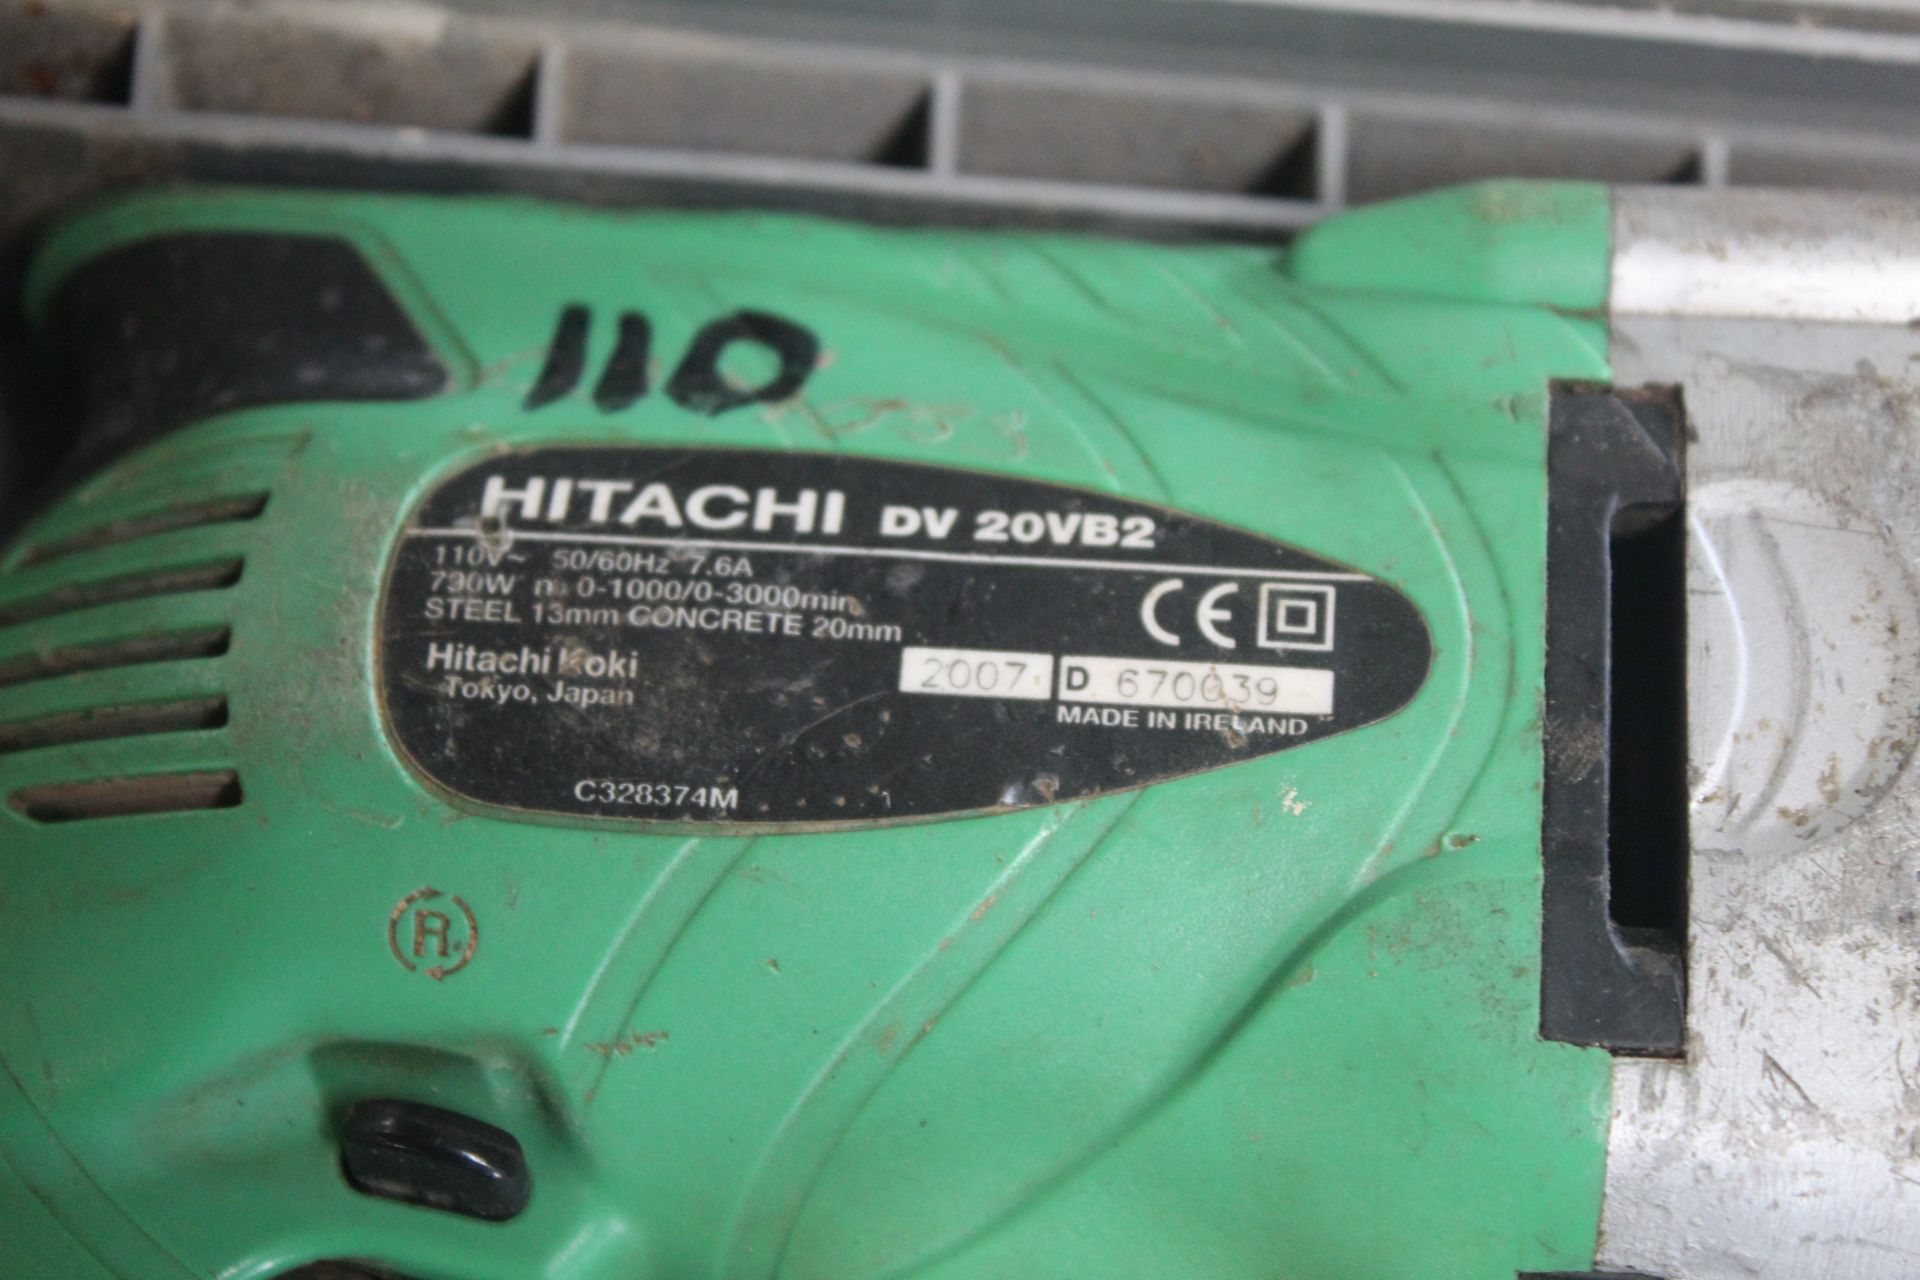 Hitachi 110v drill. - Bild 6 aus 6